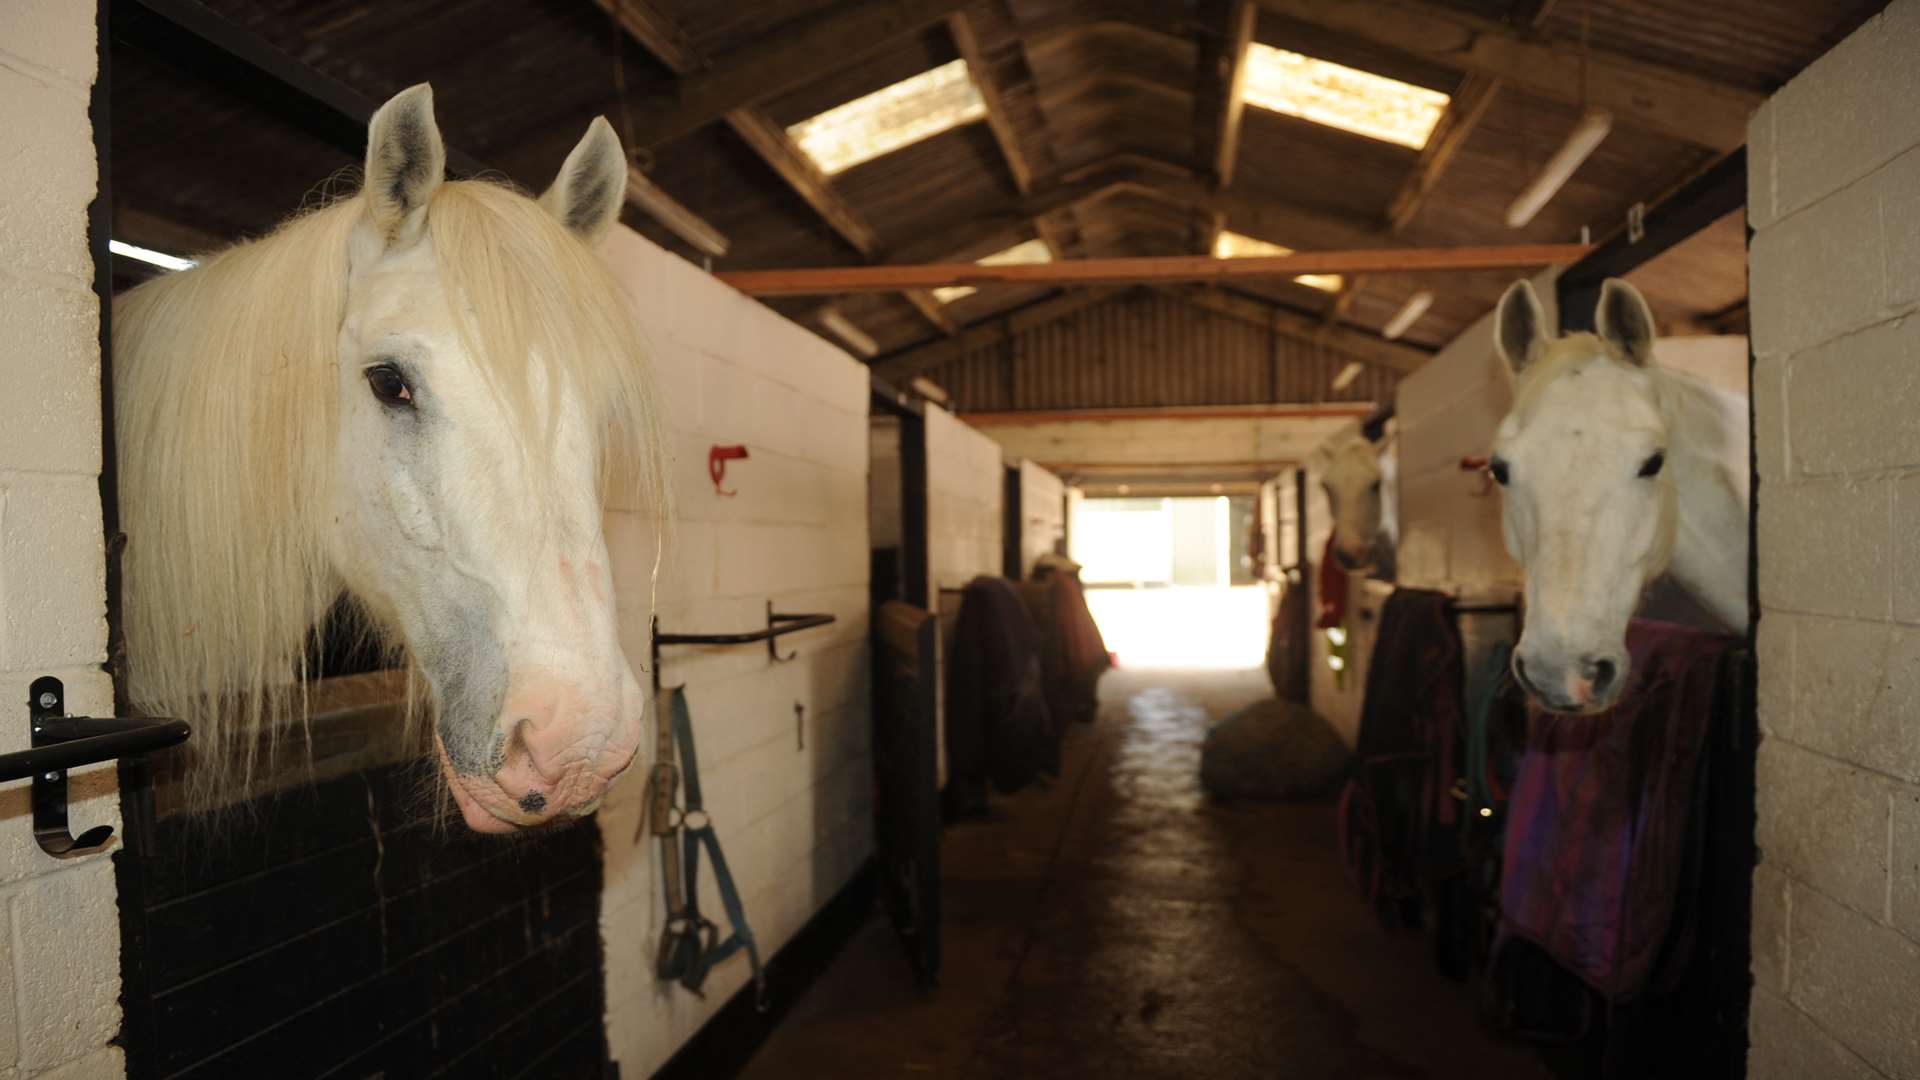 Whitehorse Farm, White Horse Lane, Meopham. Ronnie (left)